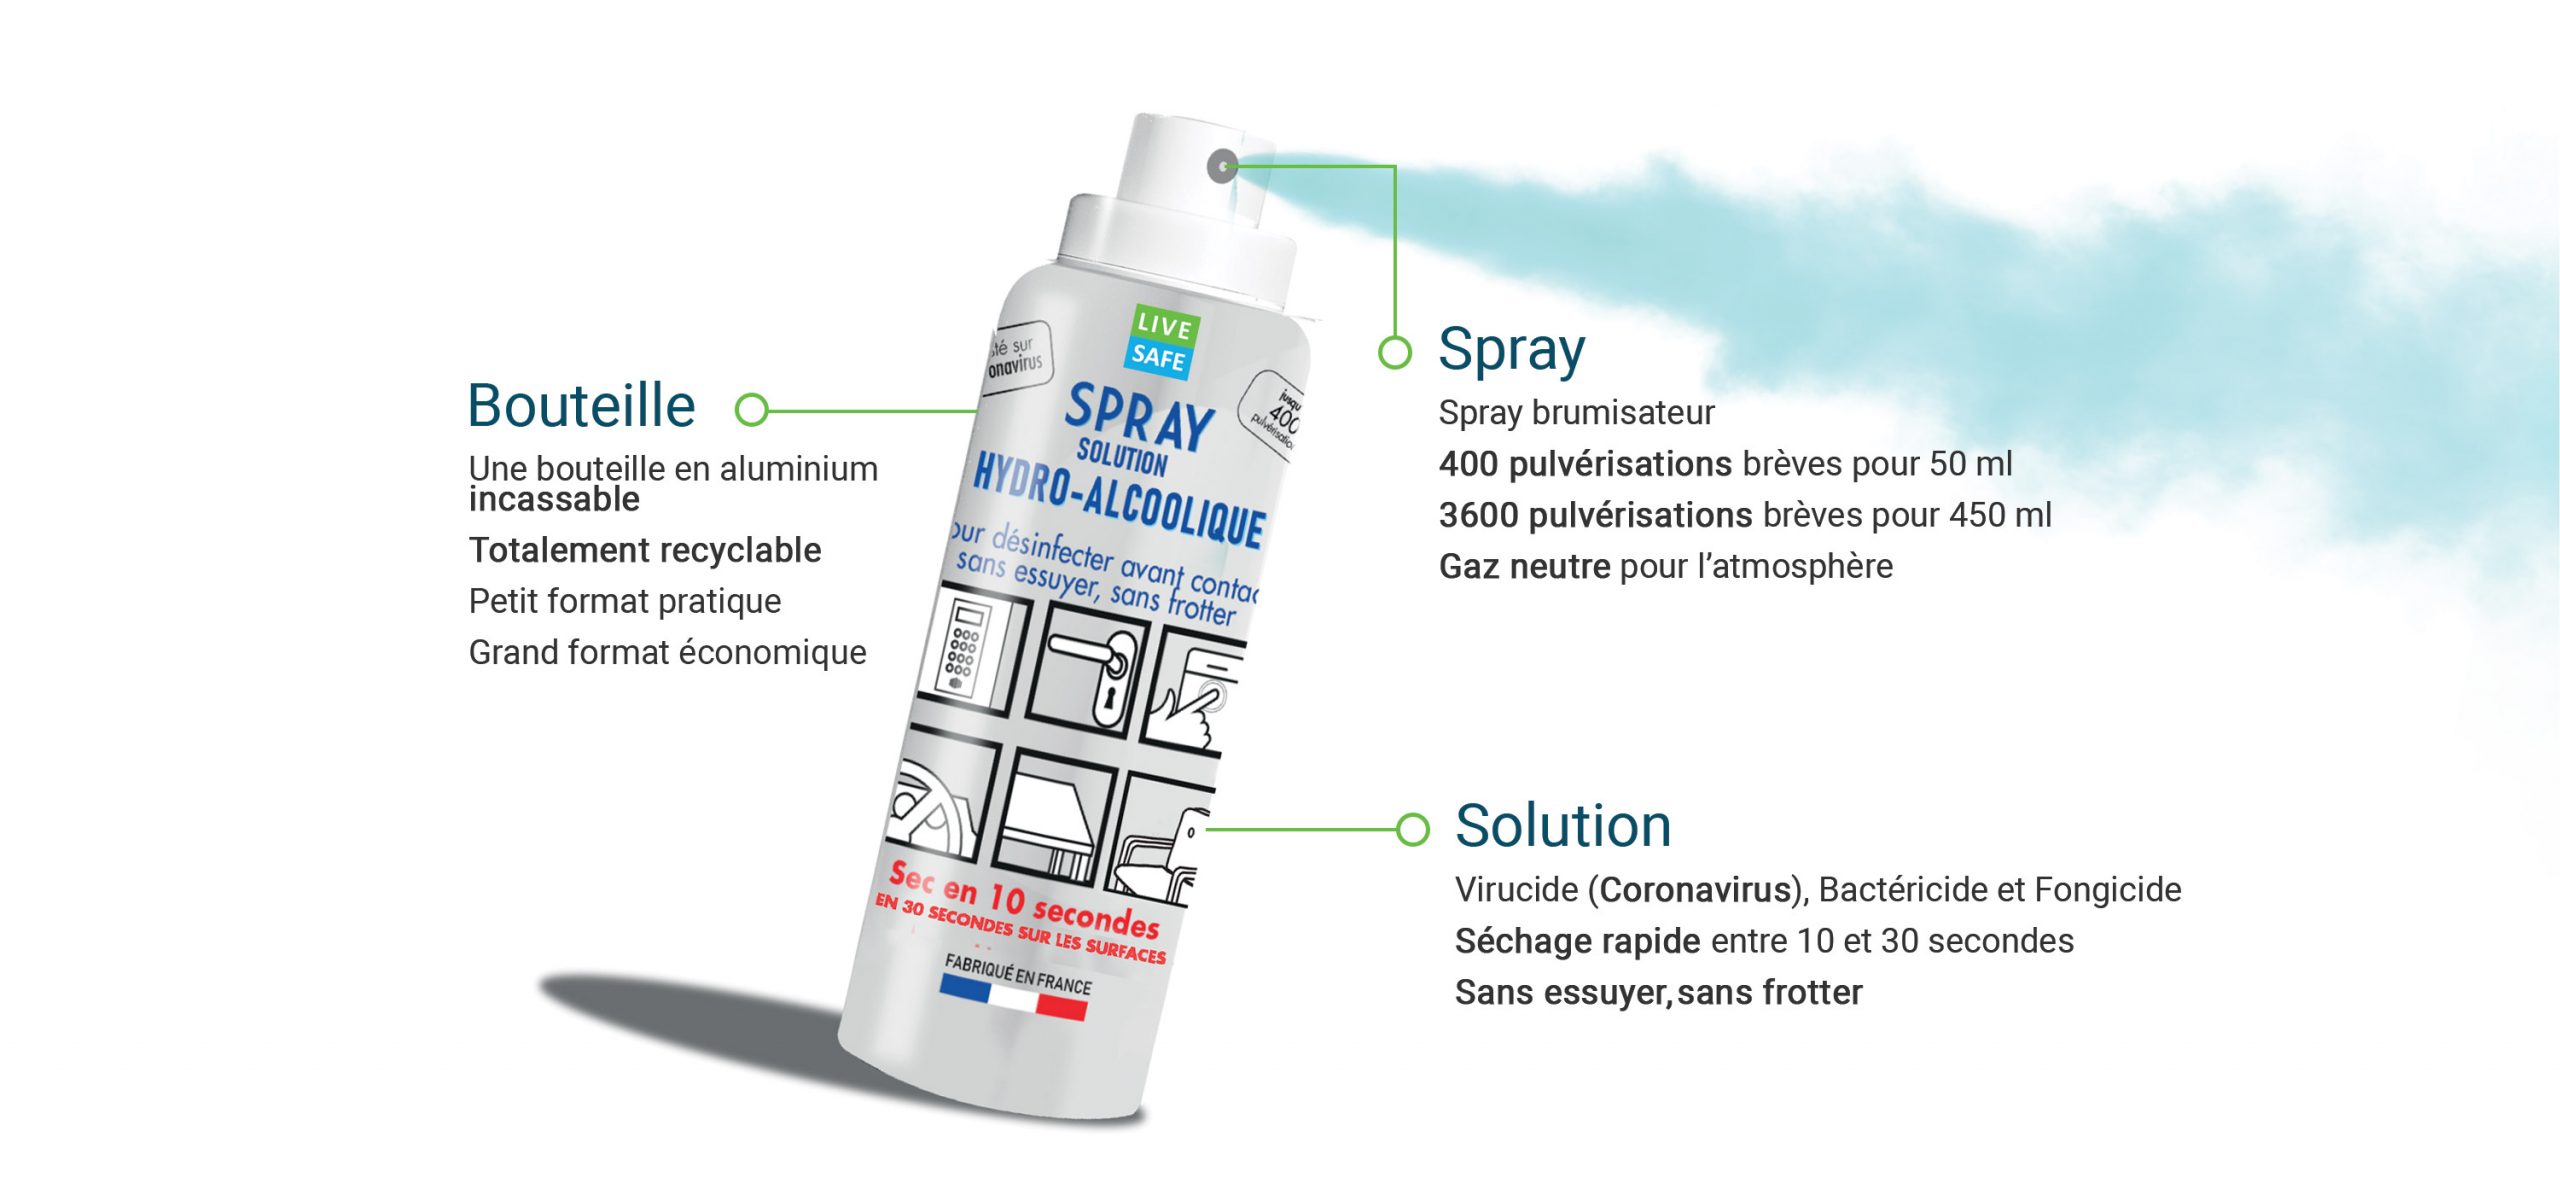 spray life safe hydro alcoolique